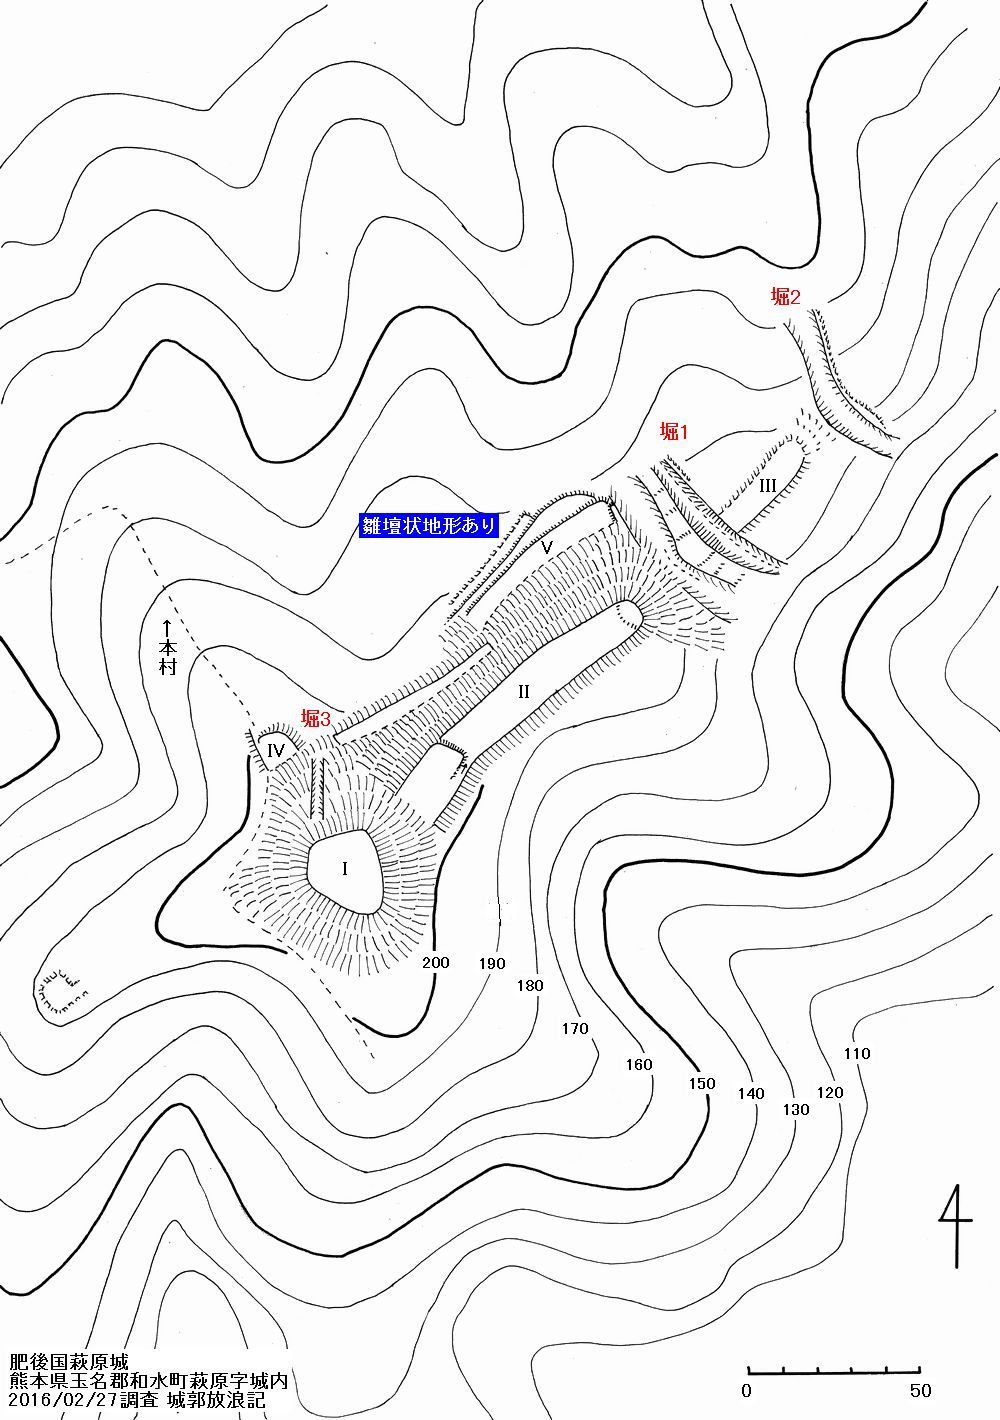 肥後 萩原城の縄張図